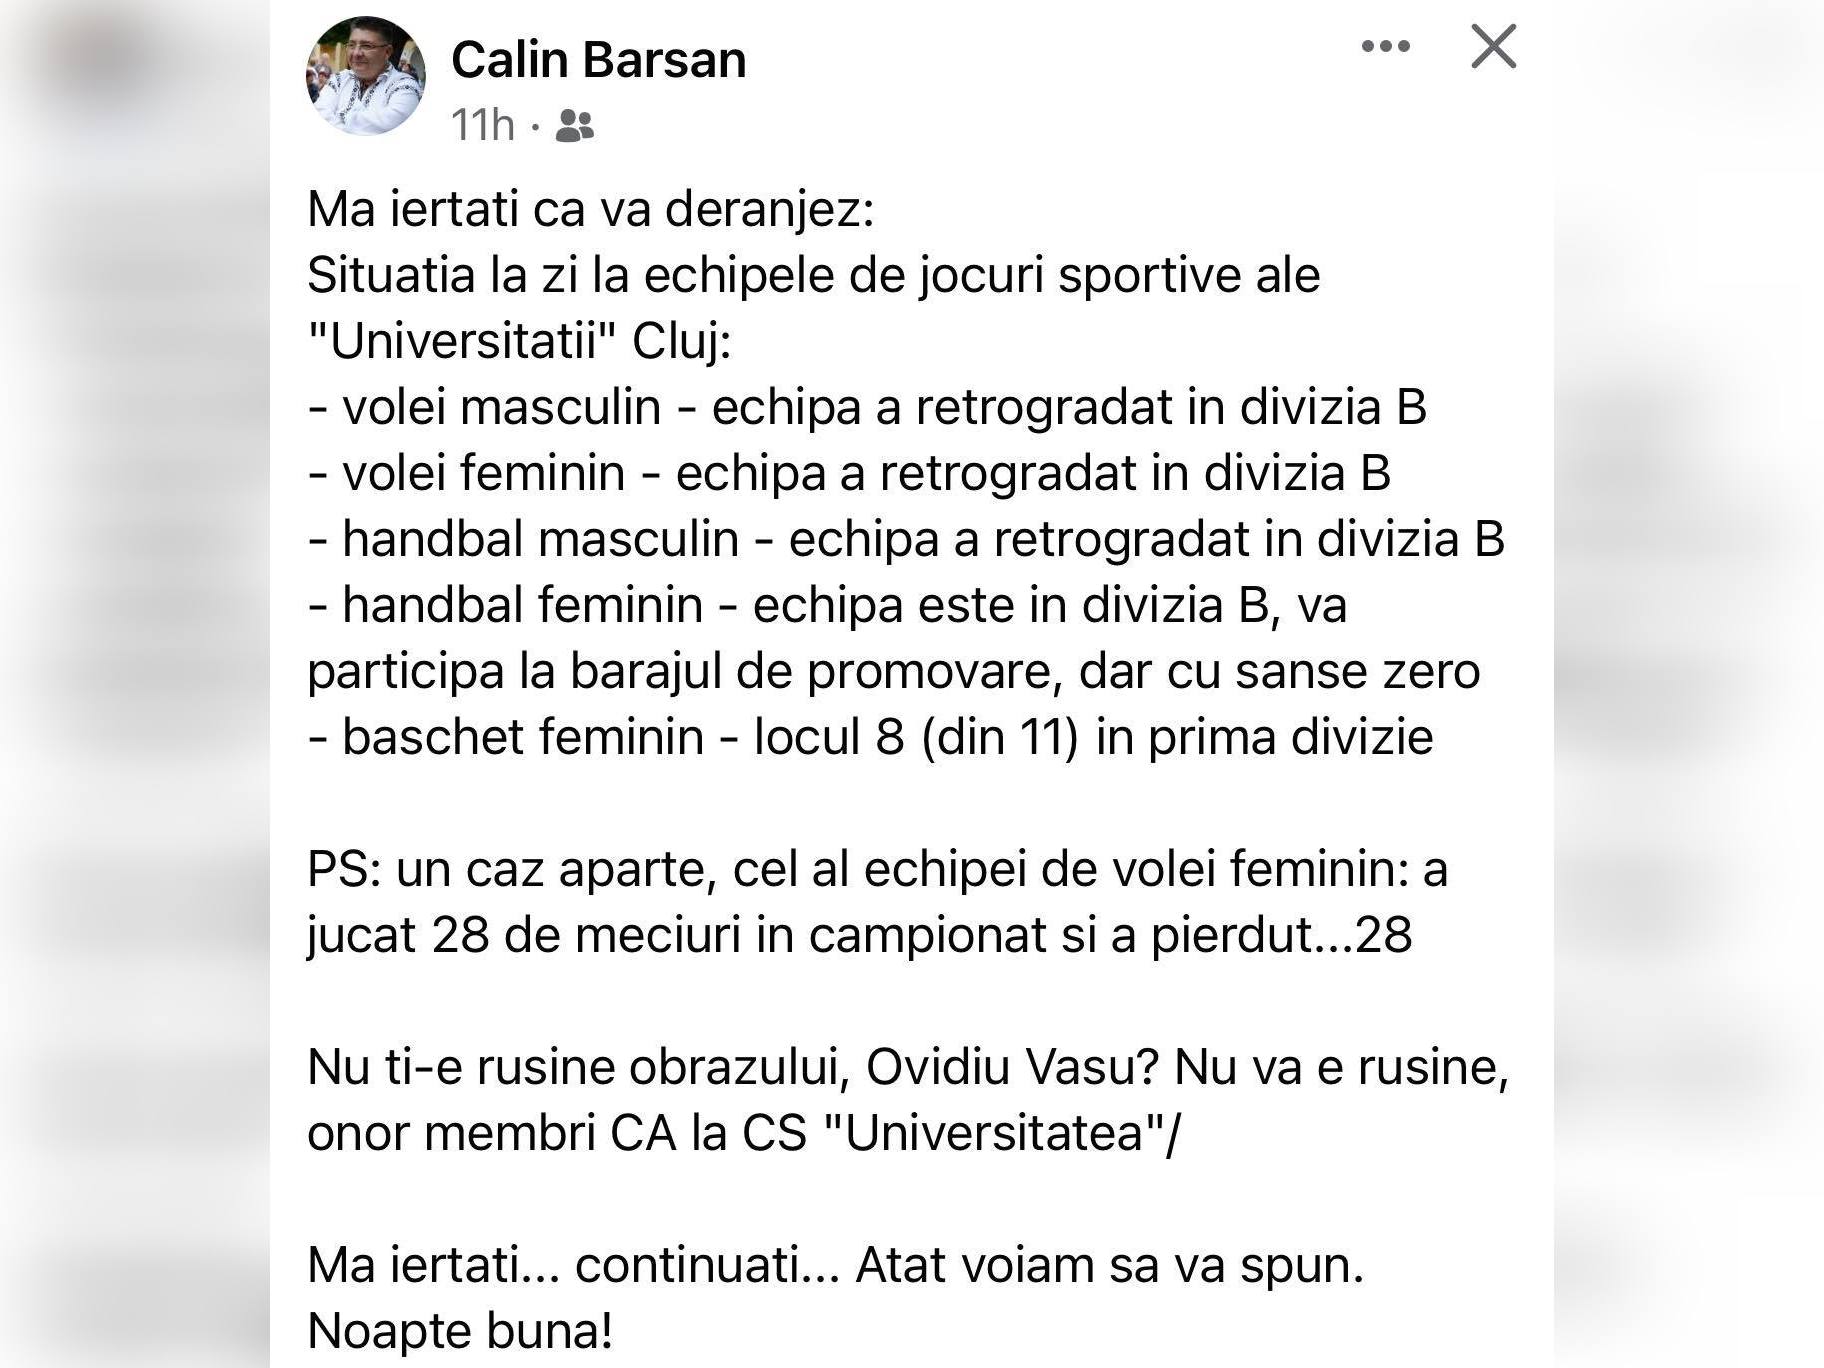 Unul dintre cei mai respectați fani U-iști, reacție după eșecurile pe linie: „Nu ți-e rușine obrazului, Ovidiu Vasu?” - ZiardeCluj.ro